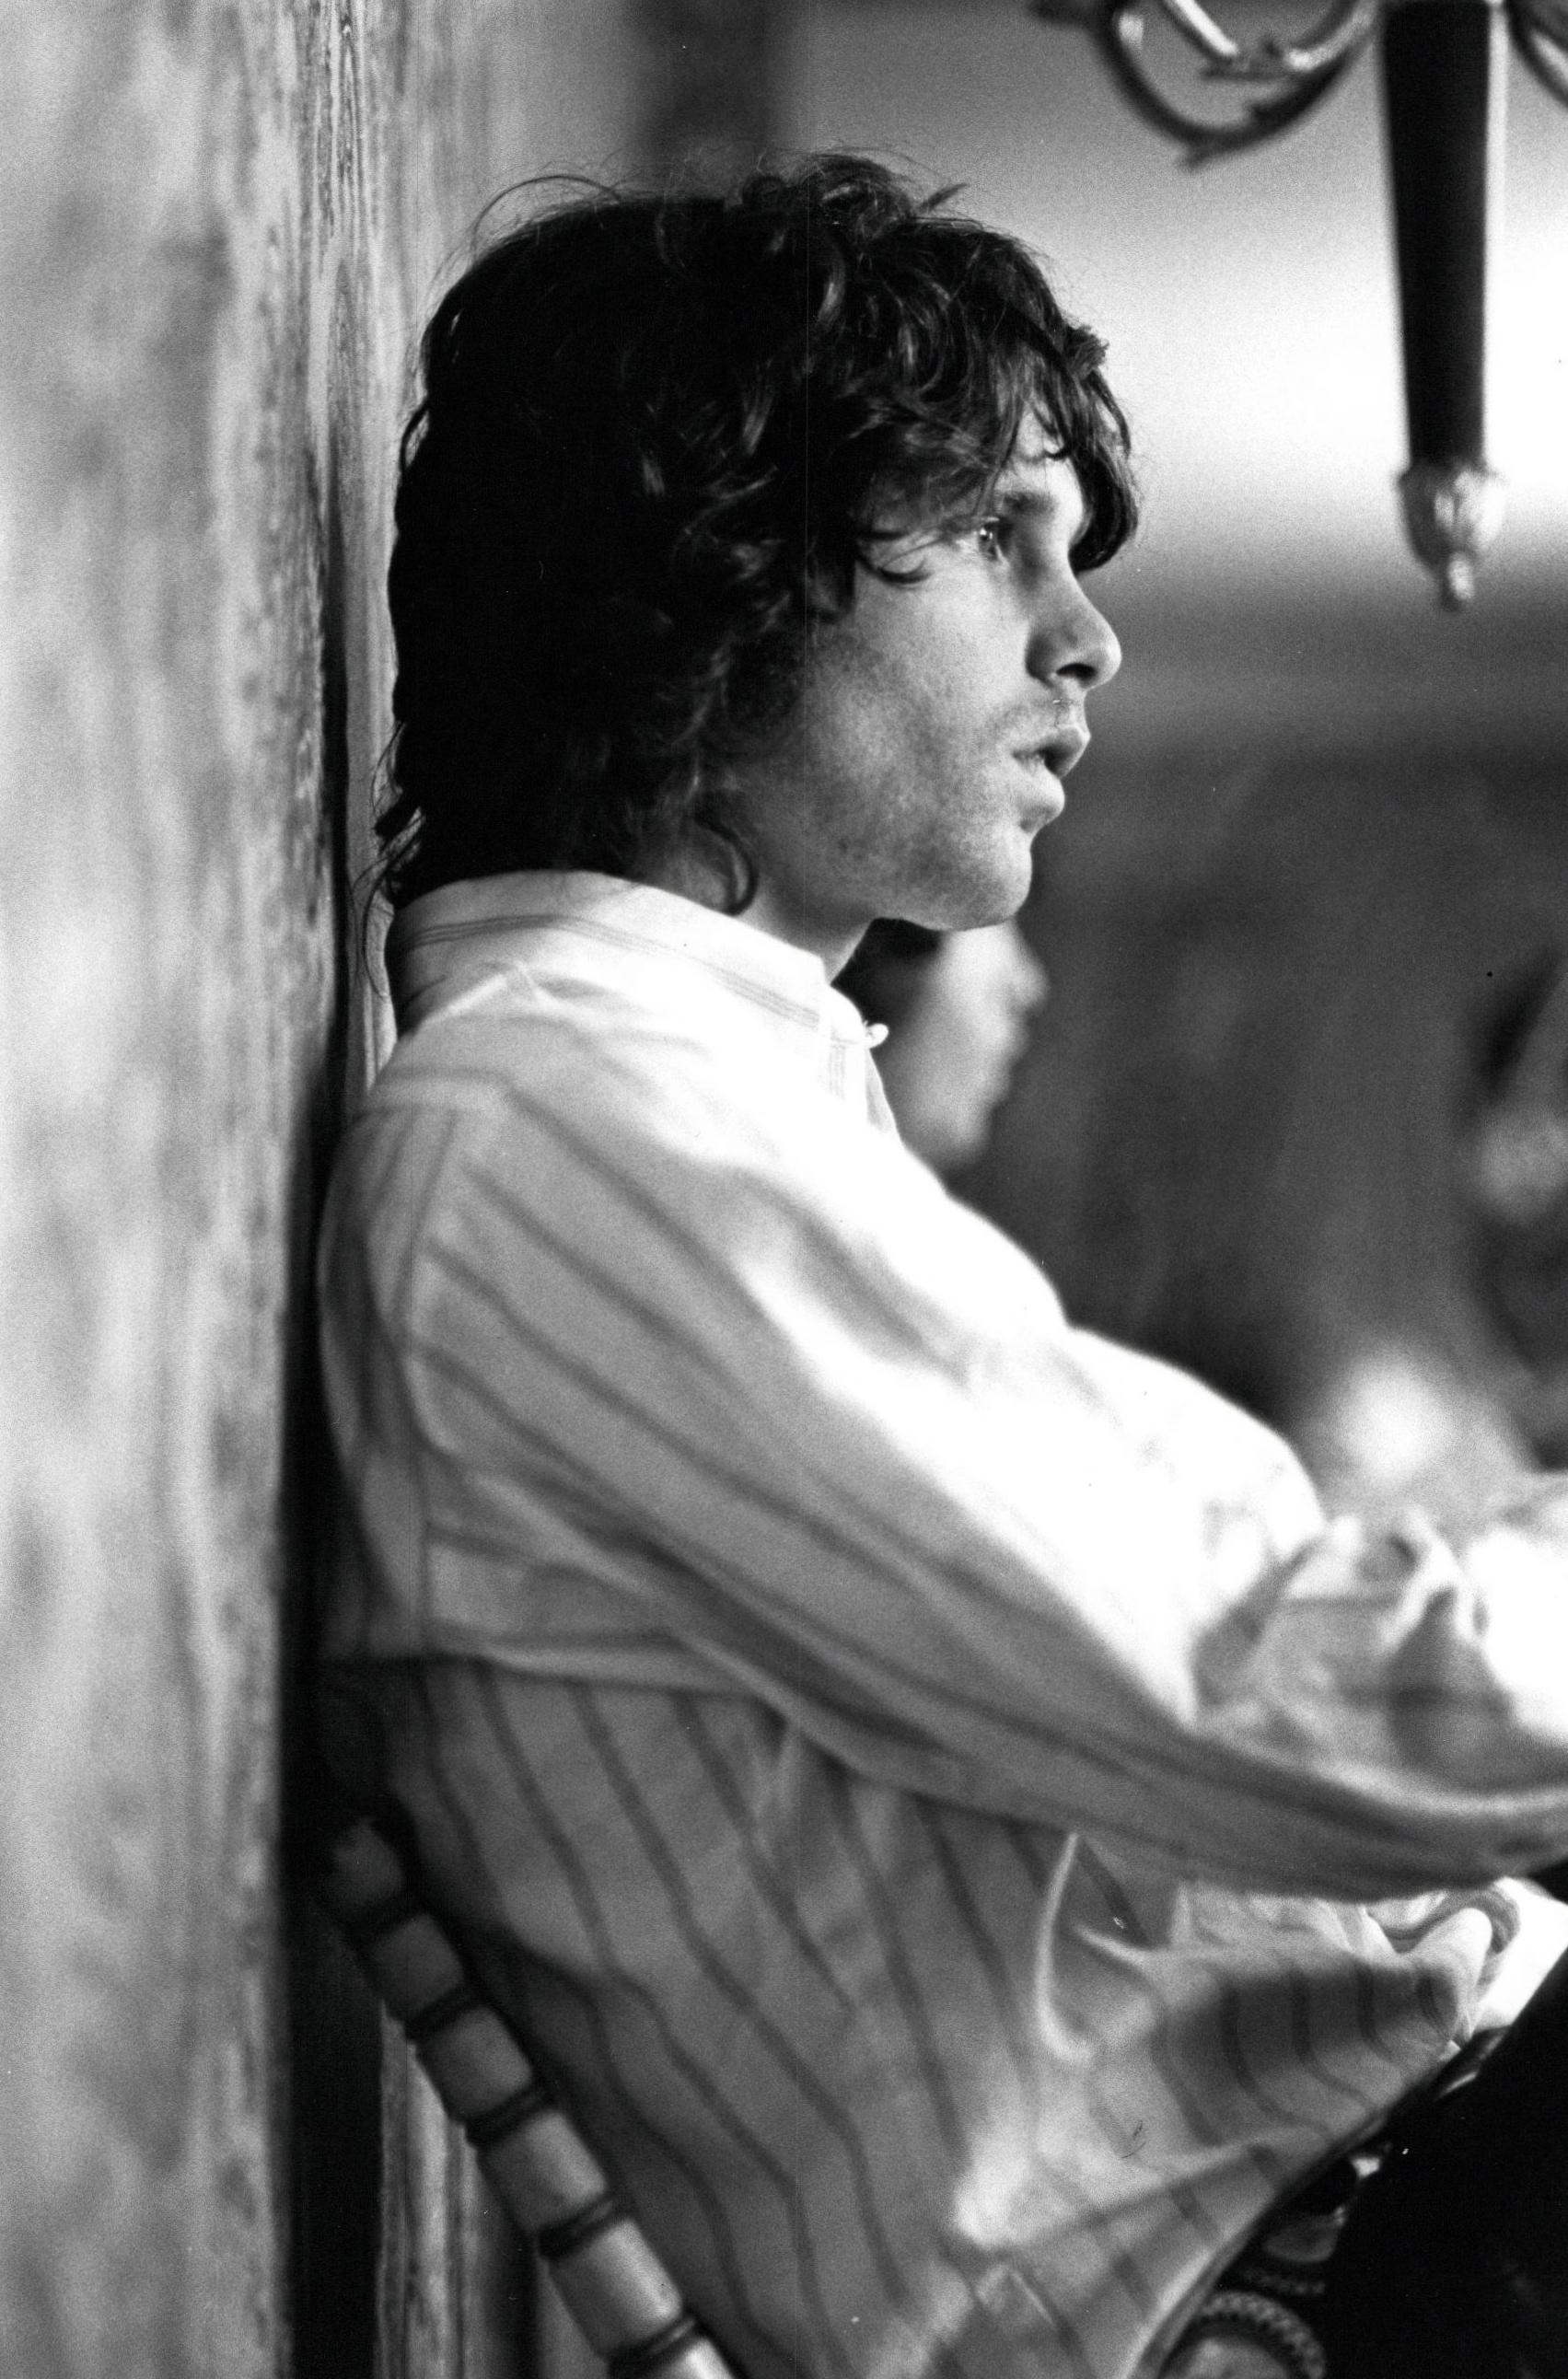 Unknown Portrait Photograph - Jim Morrison of The Doors Profile Portrait Vintage Original Photograph